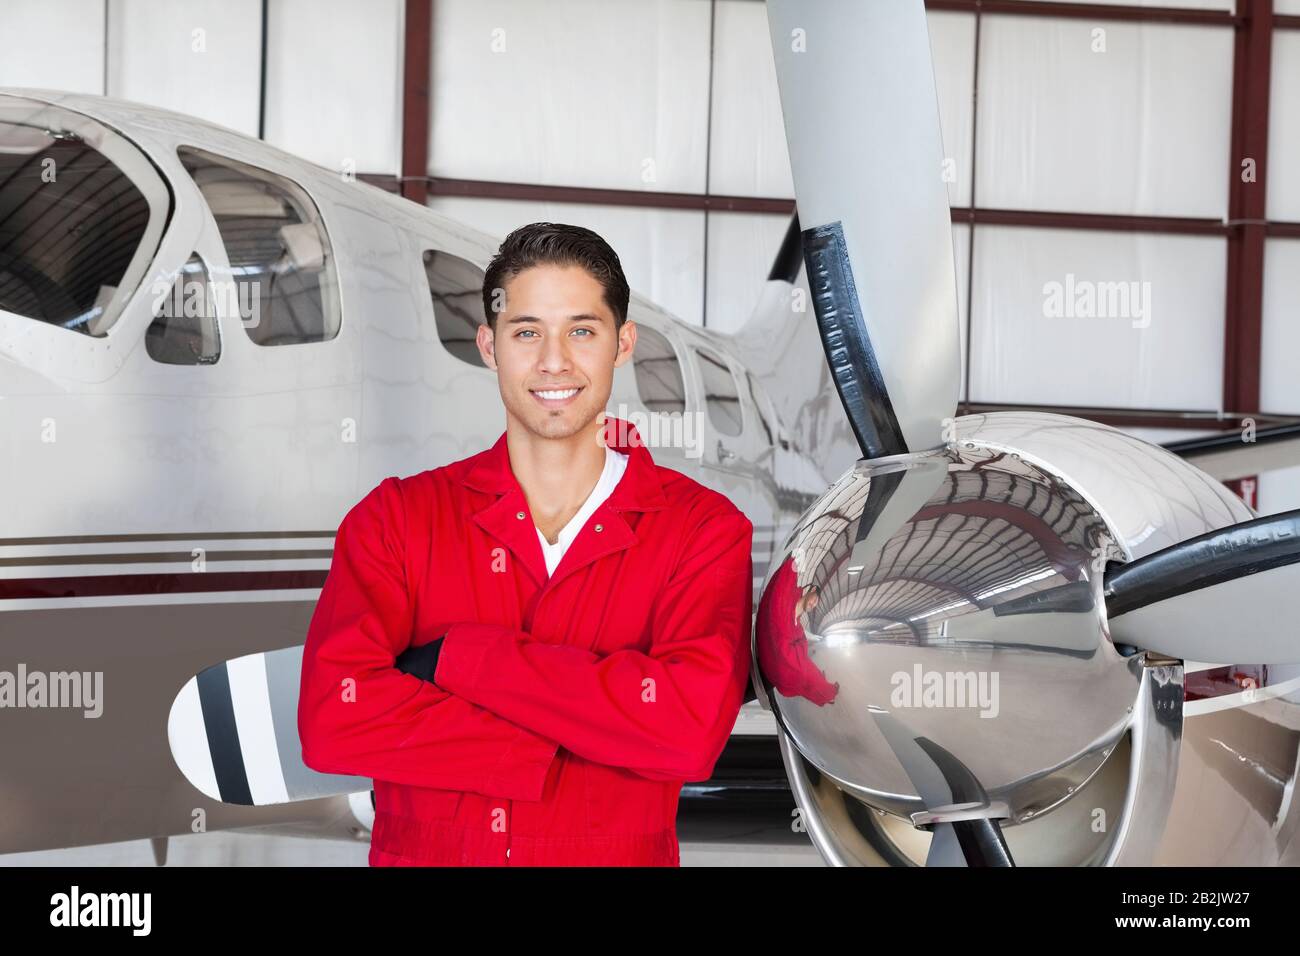 Portrait de jeune ingénieur aéronautique debout devant l'avion Banque D'Images